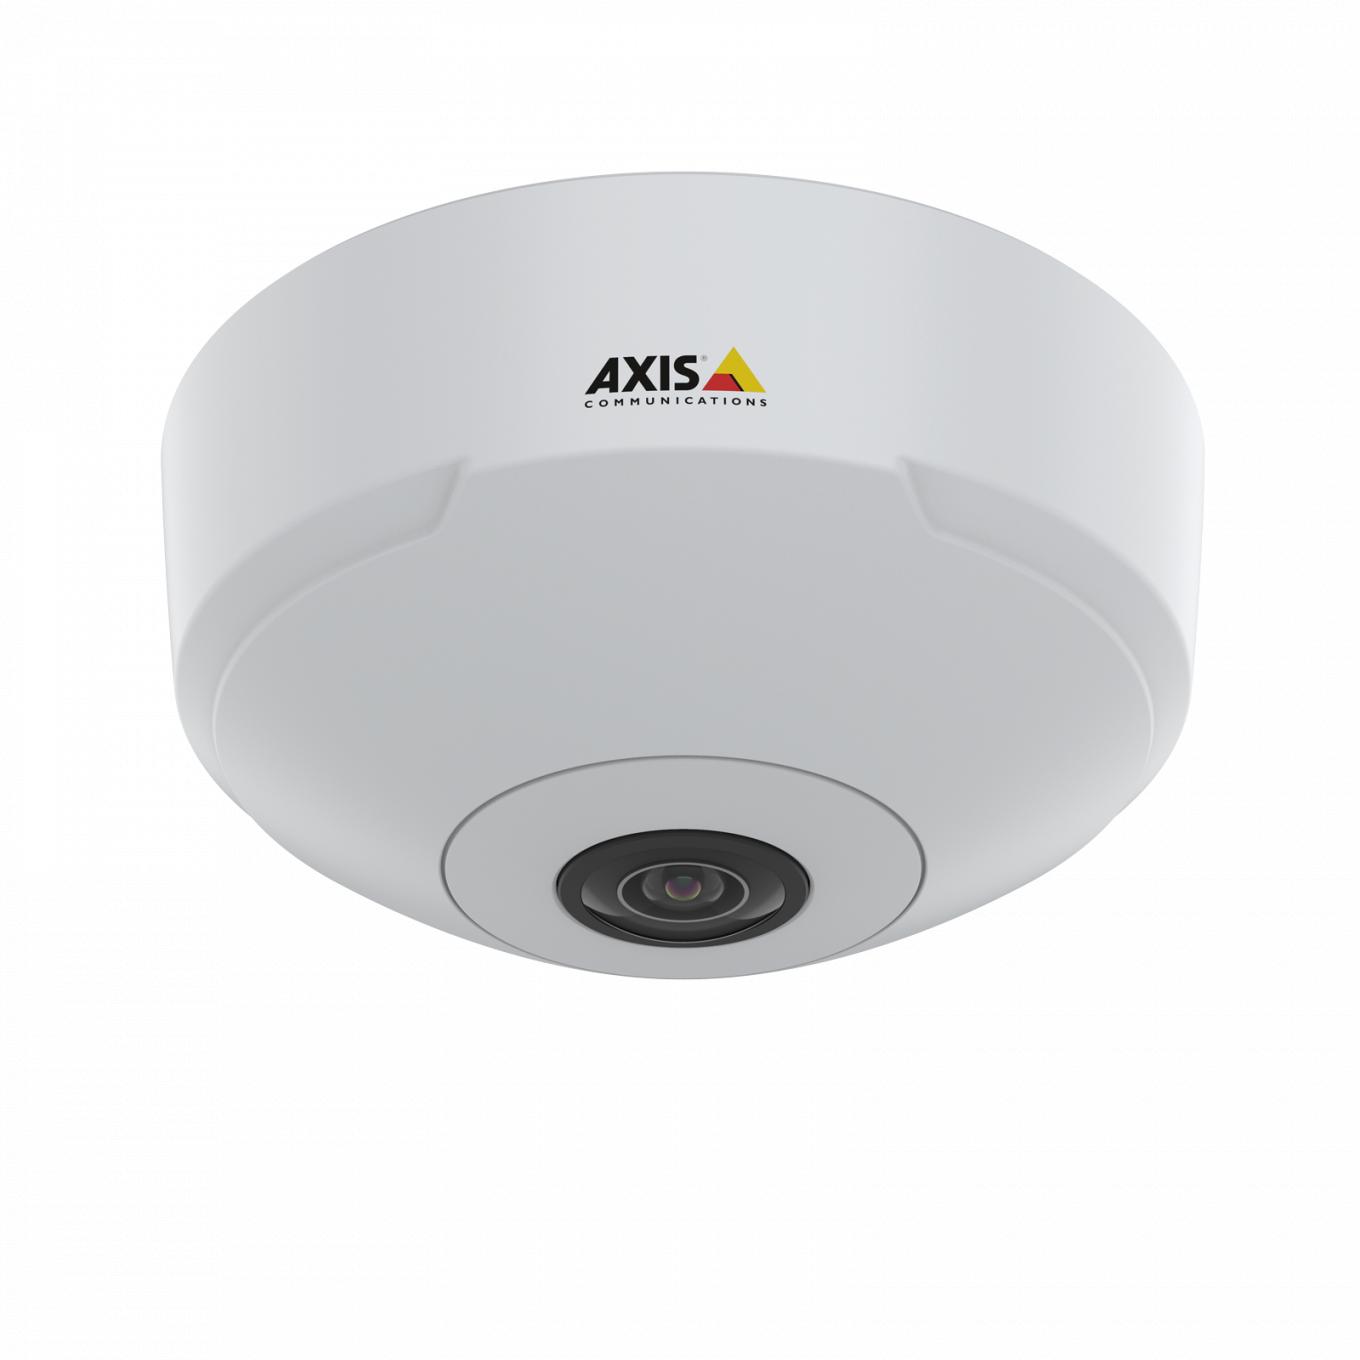 IP-камера AXIS M3068-P, установленная на потолке